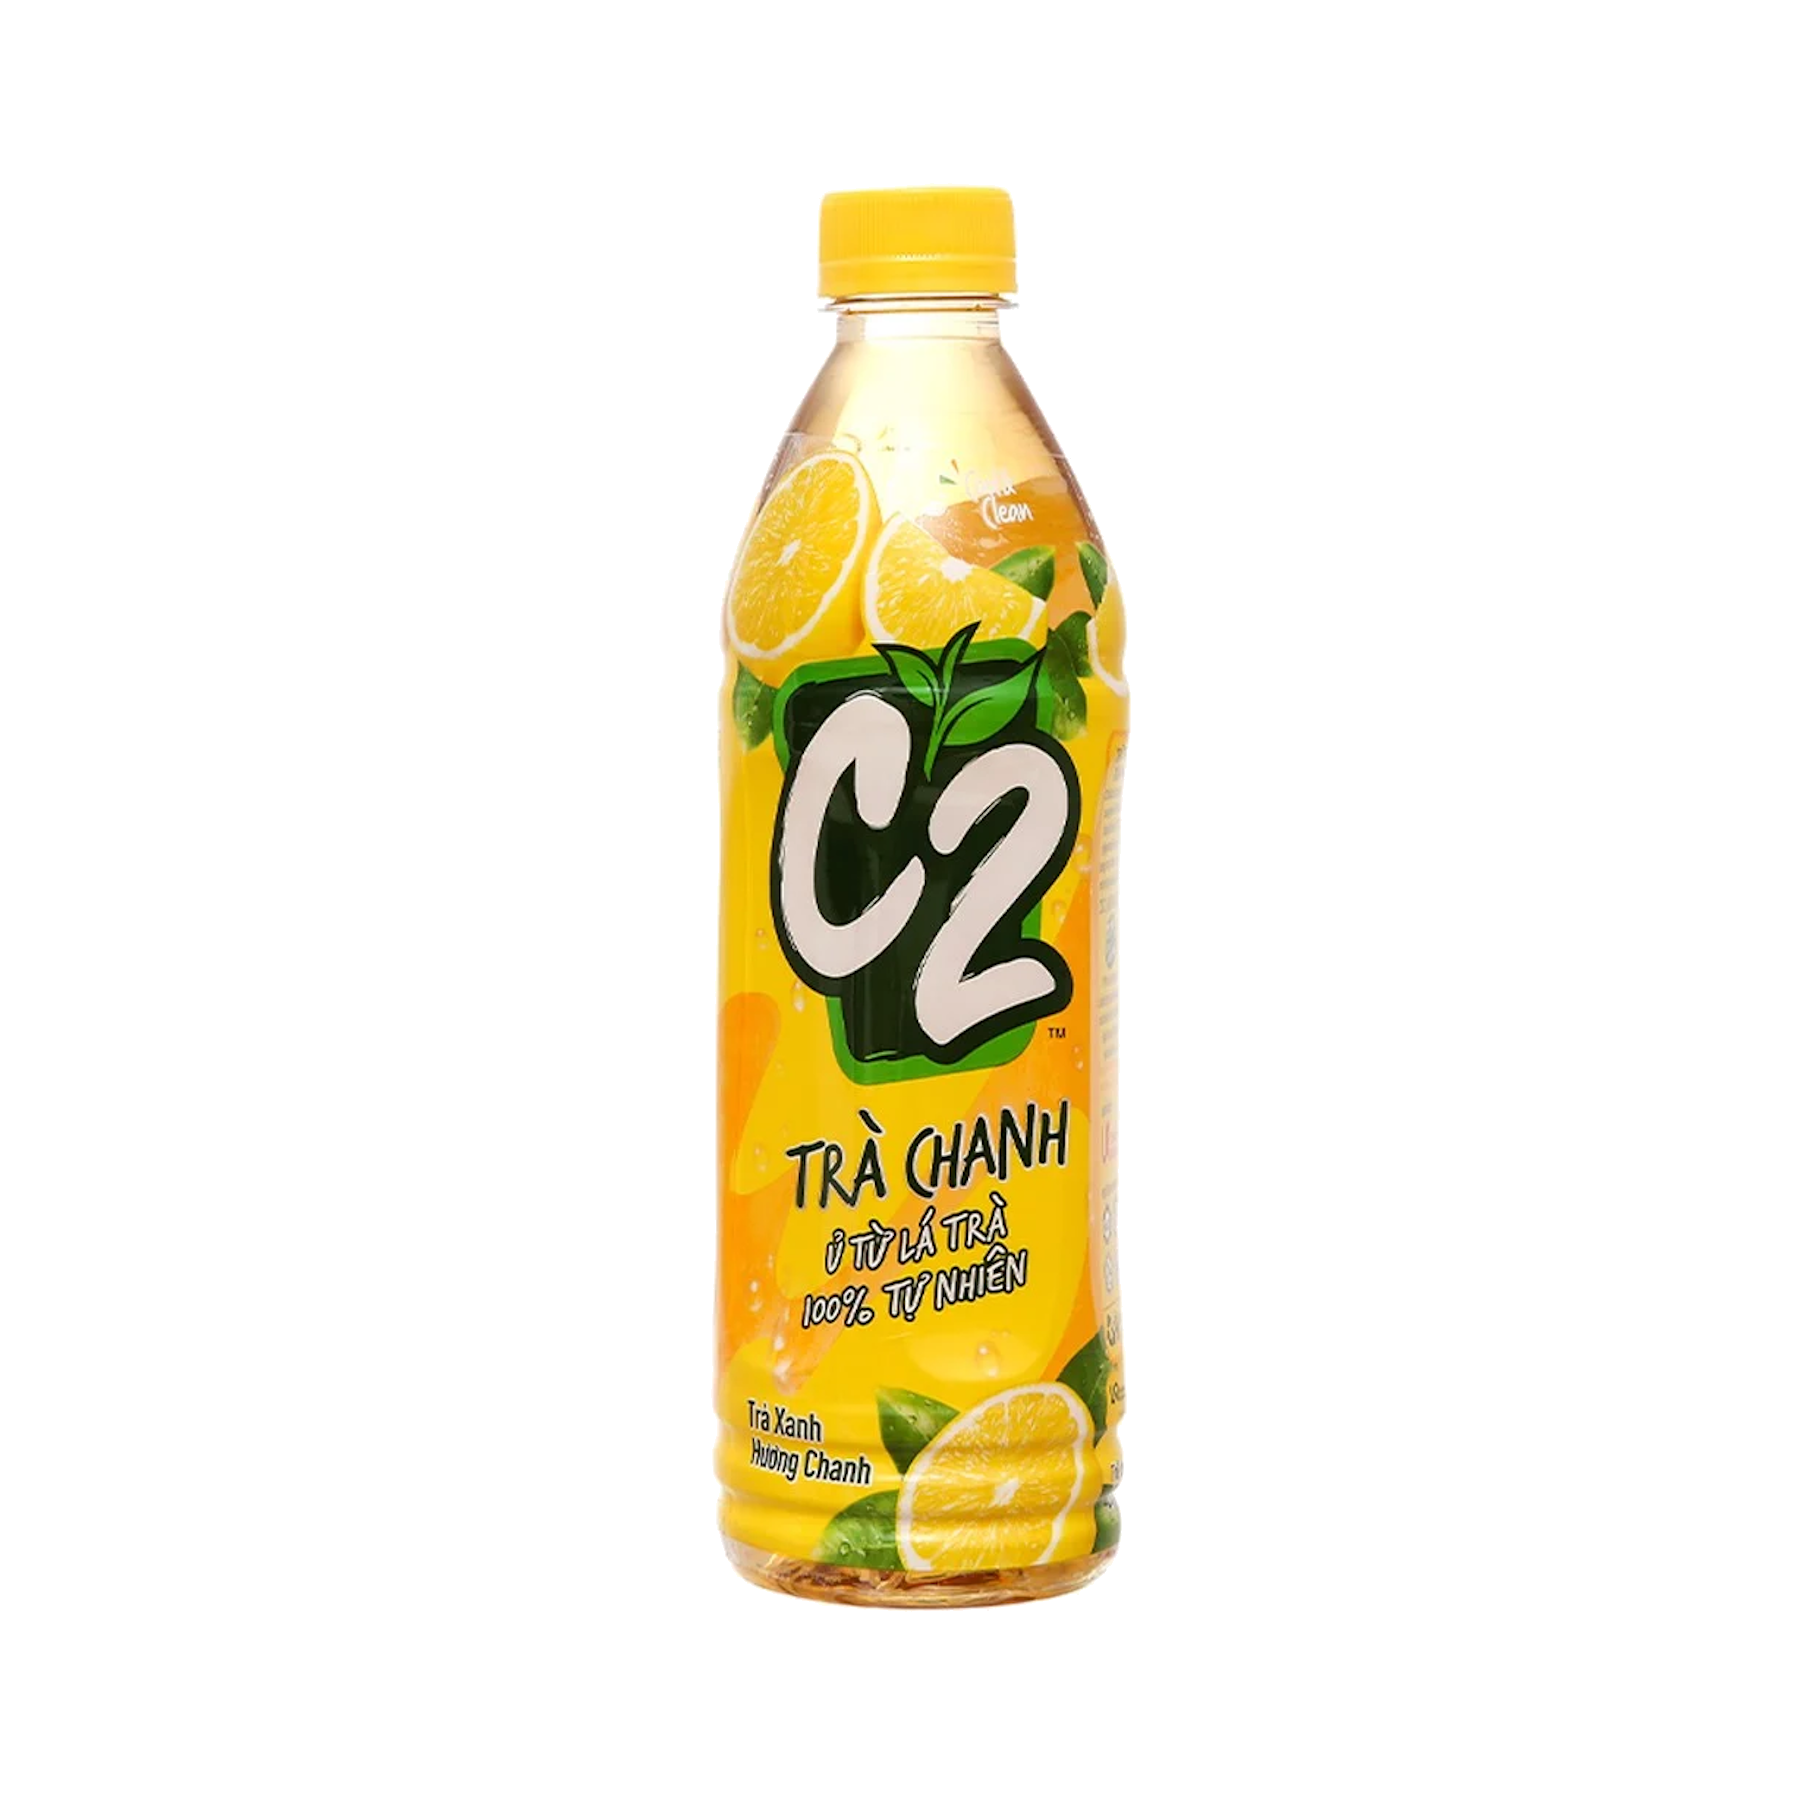 C2 Lemon Green Tea 500 ml